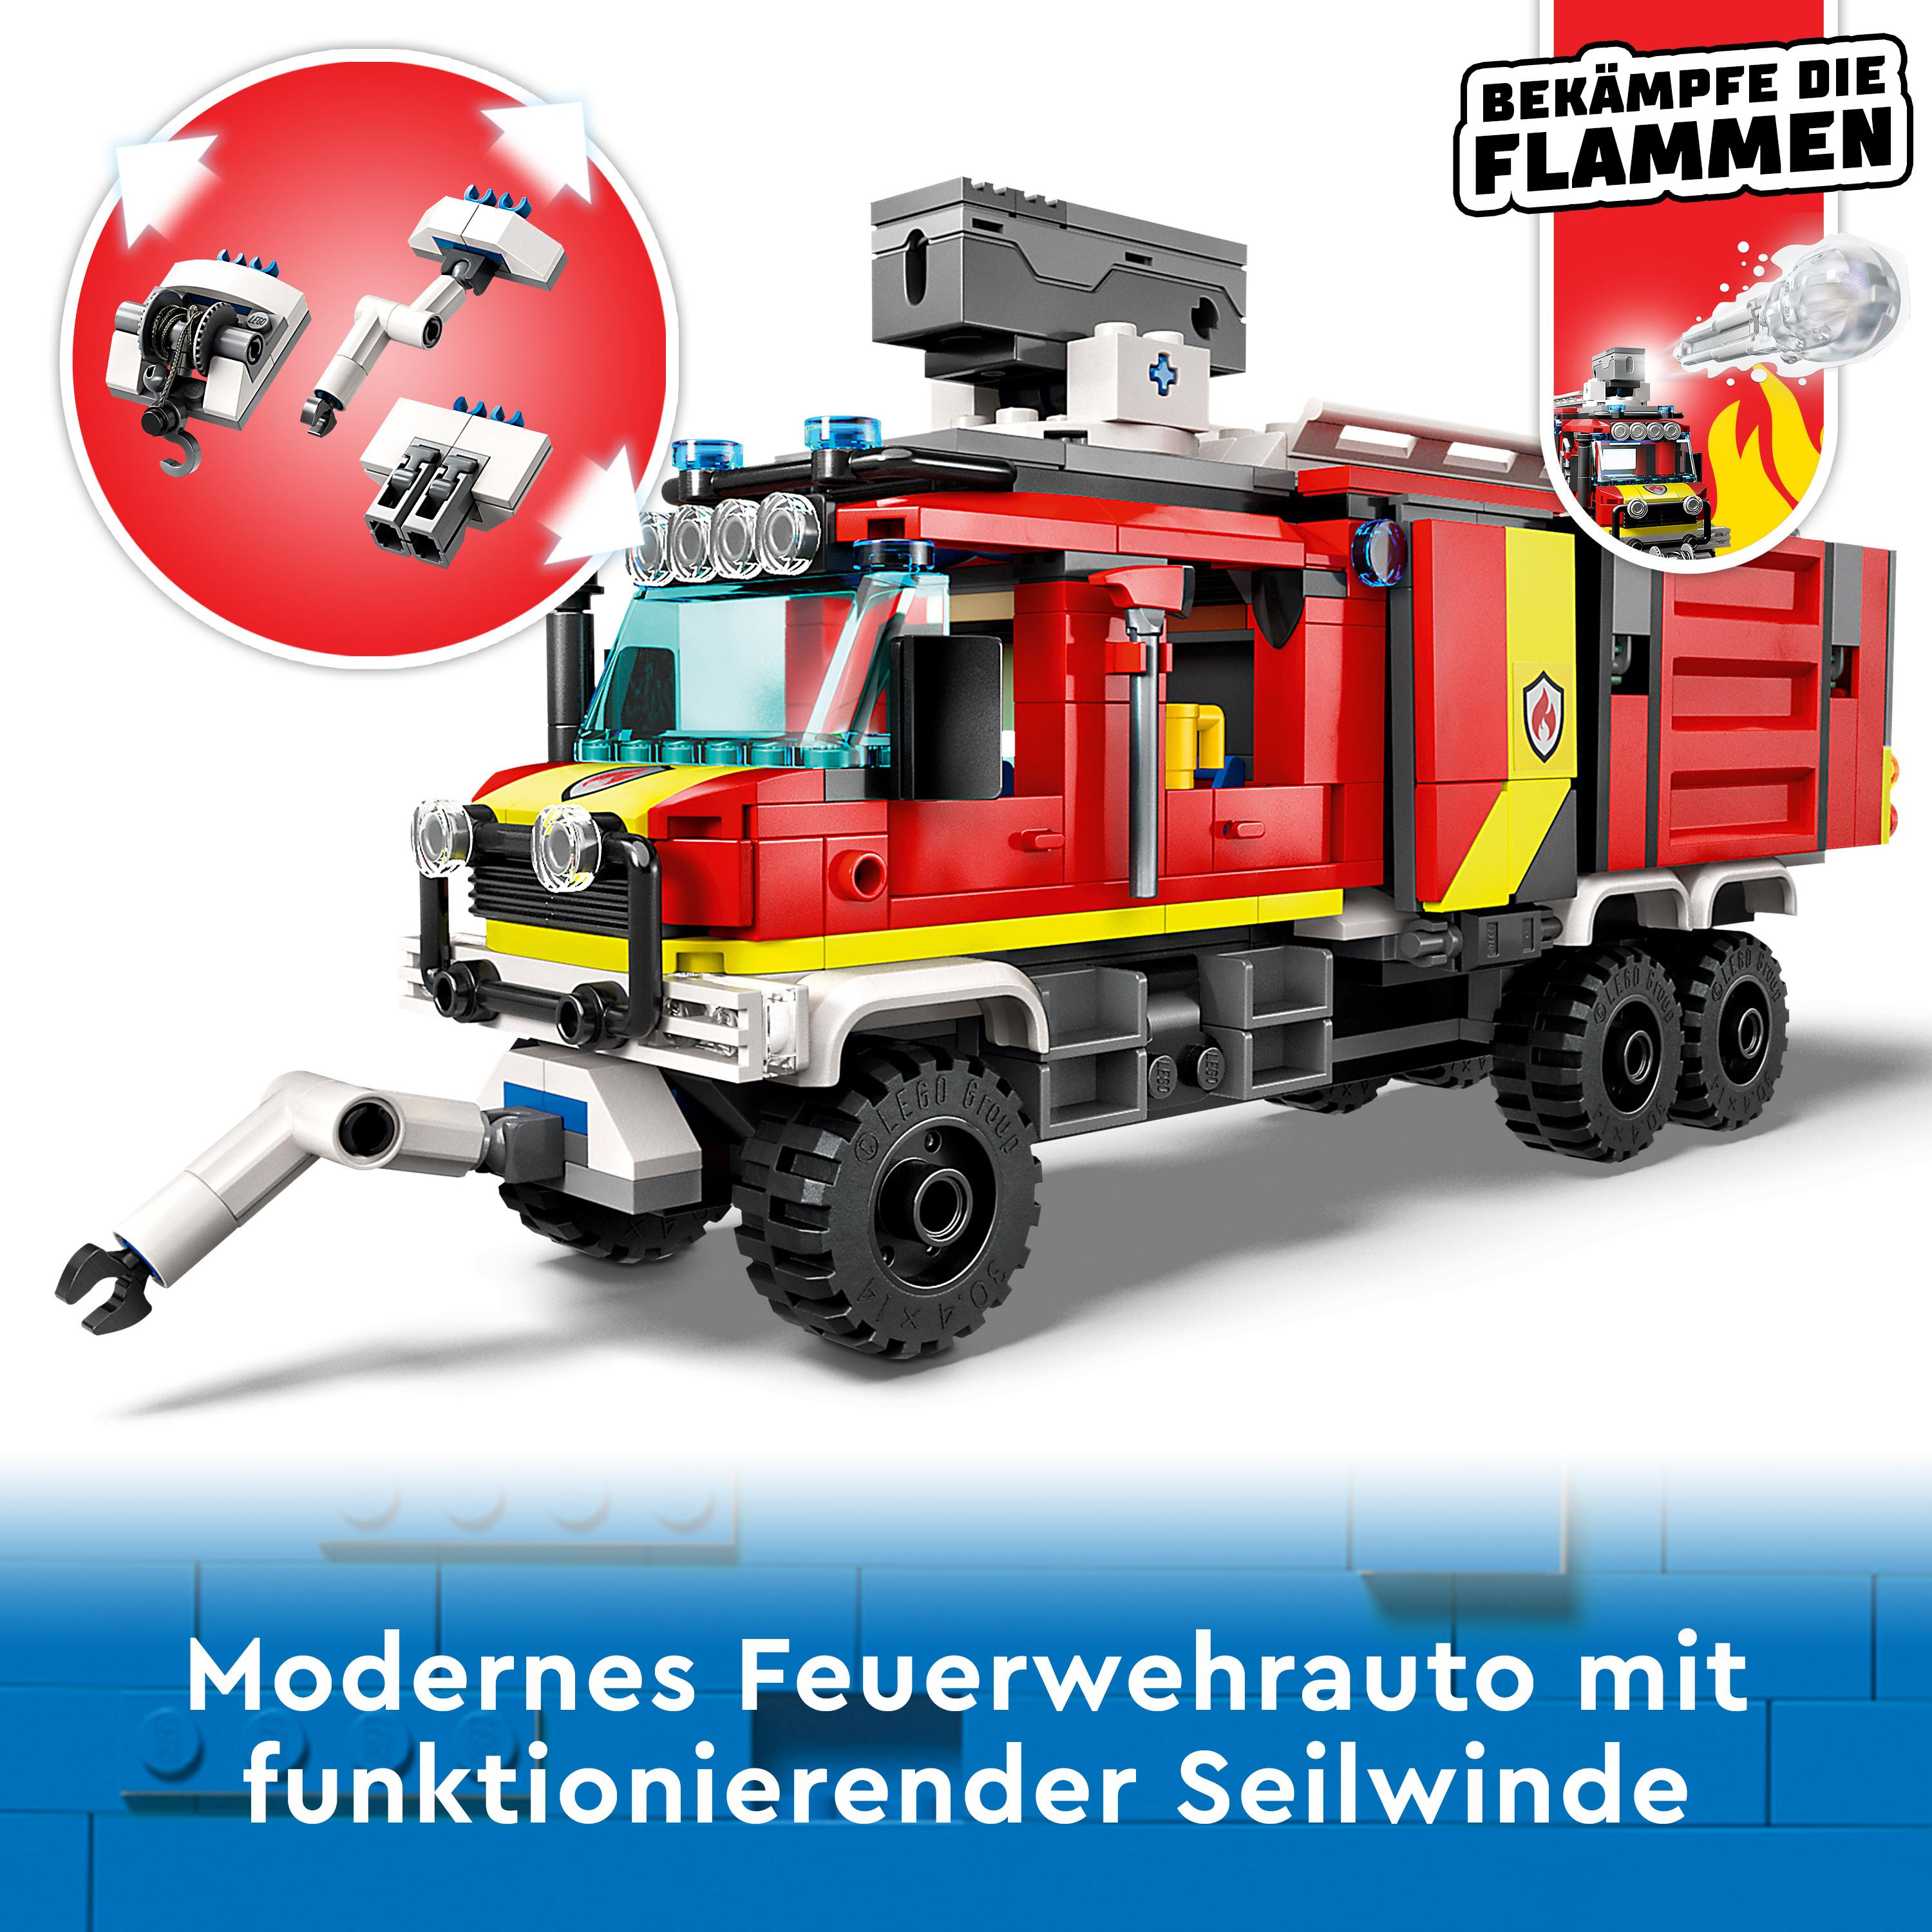 LEGO City 60374 Einsatzleitwagen der Mehrfarbig Feuerwehr Bausatz